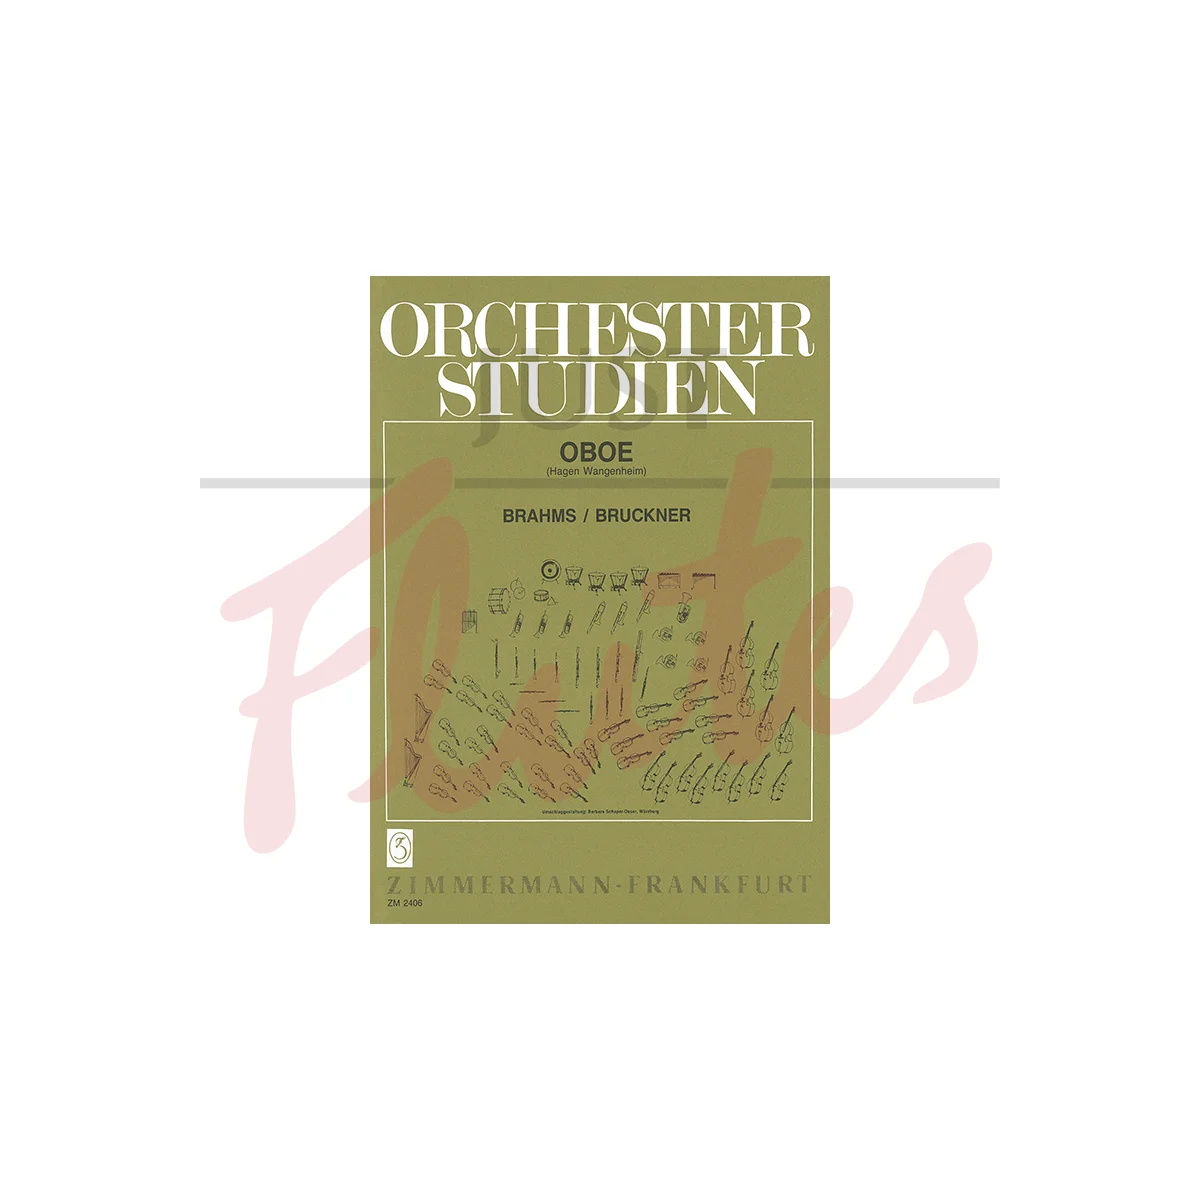 Orchestra Studies for Oboe - Brahms/Bruckner